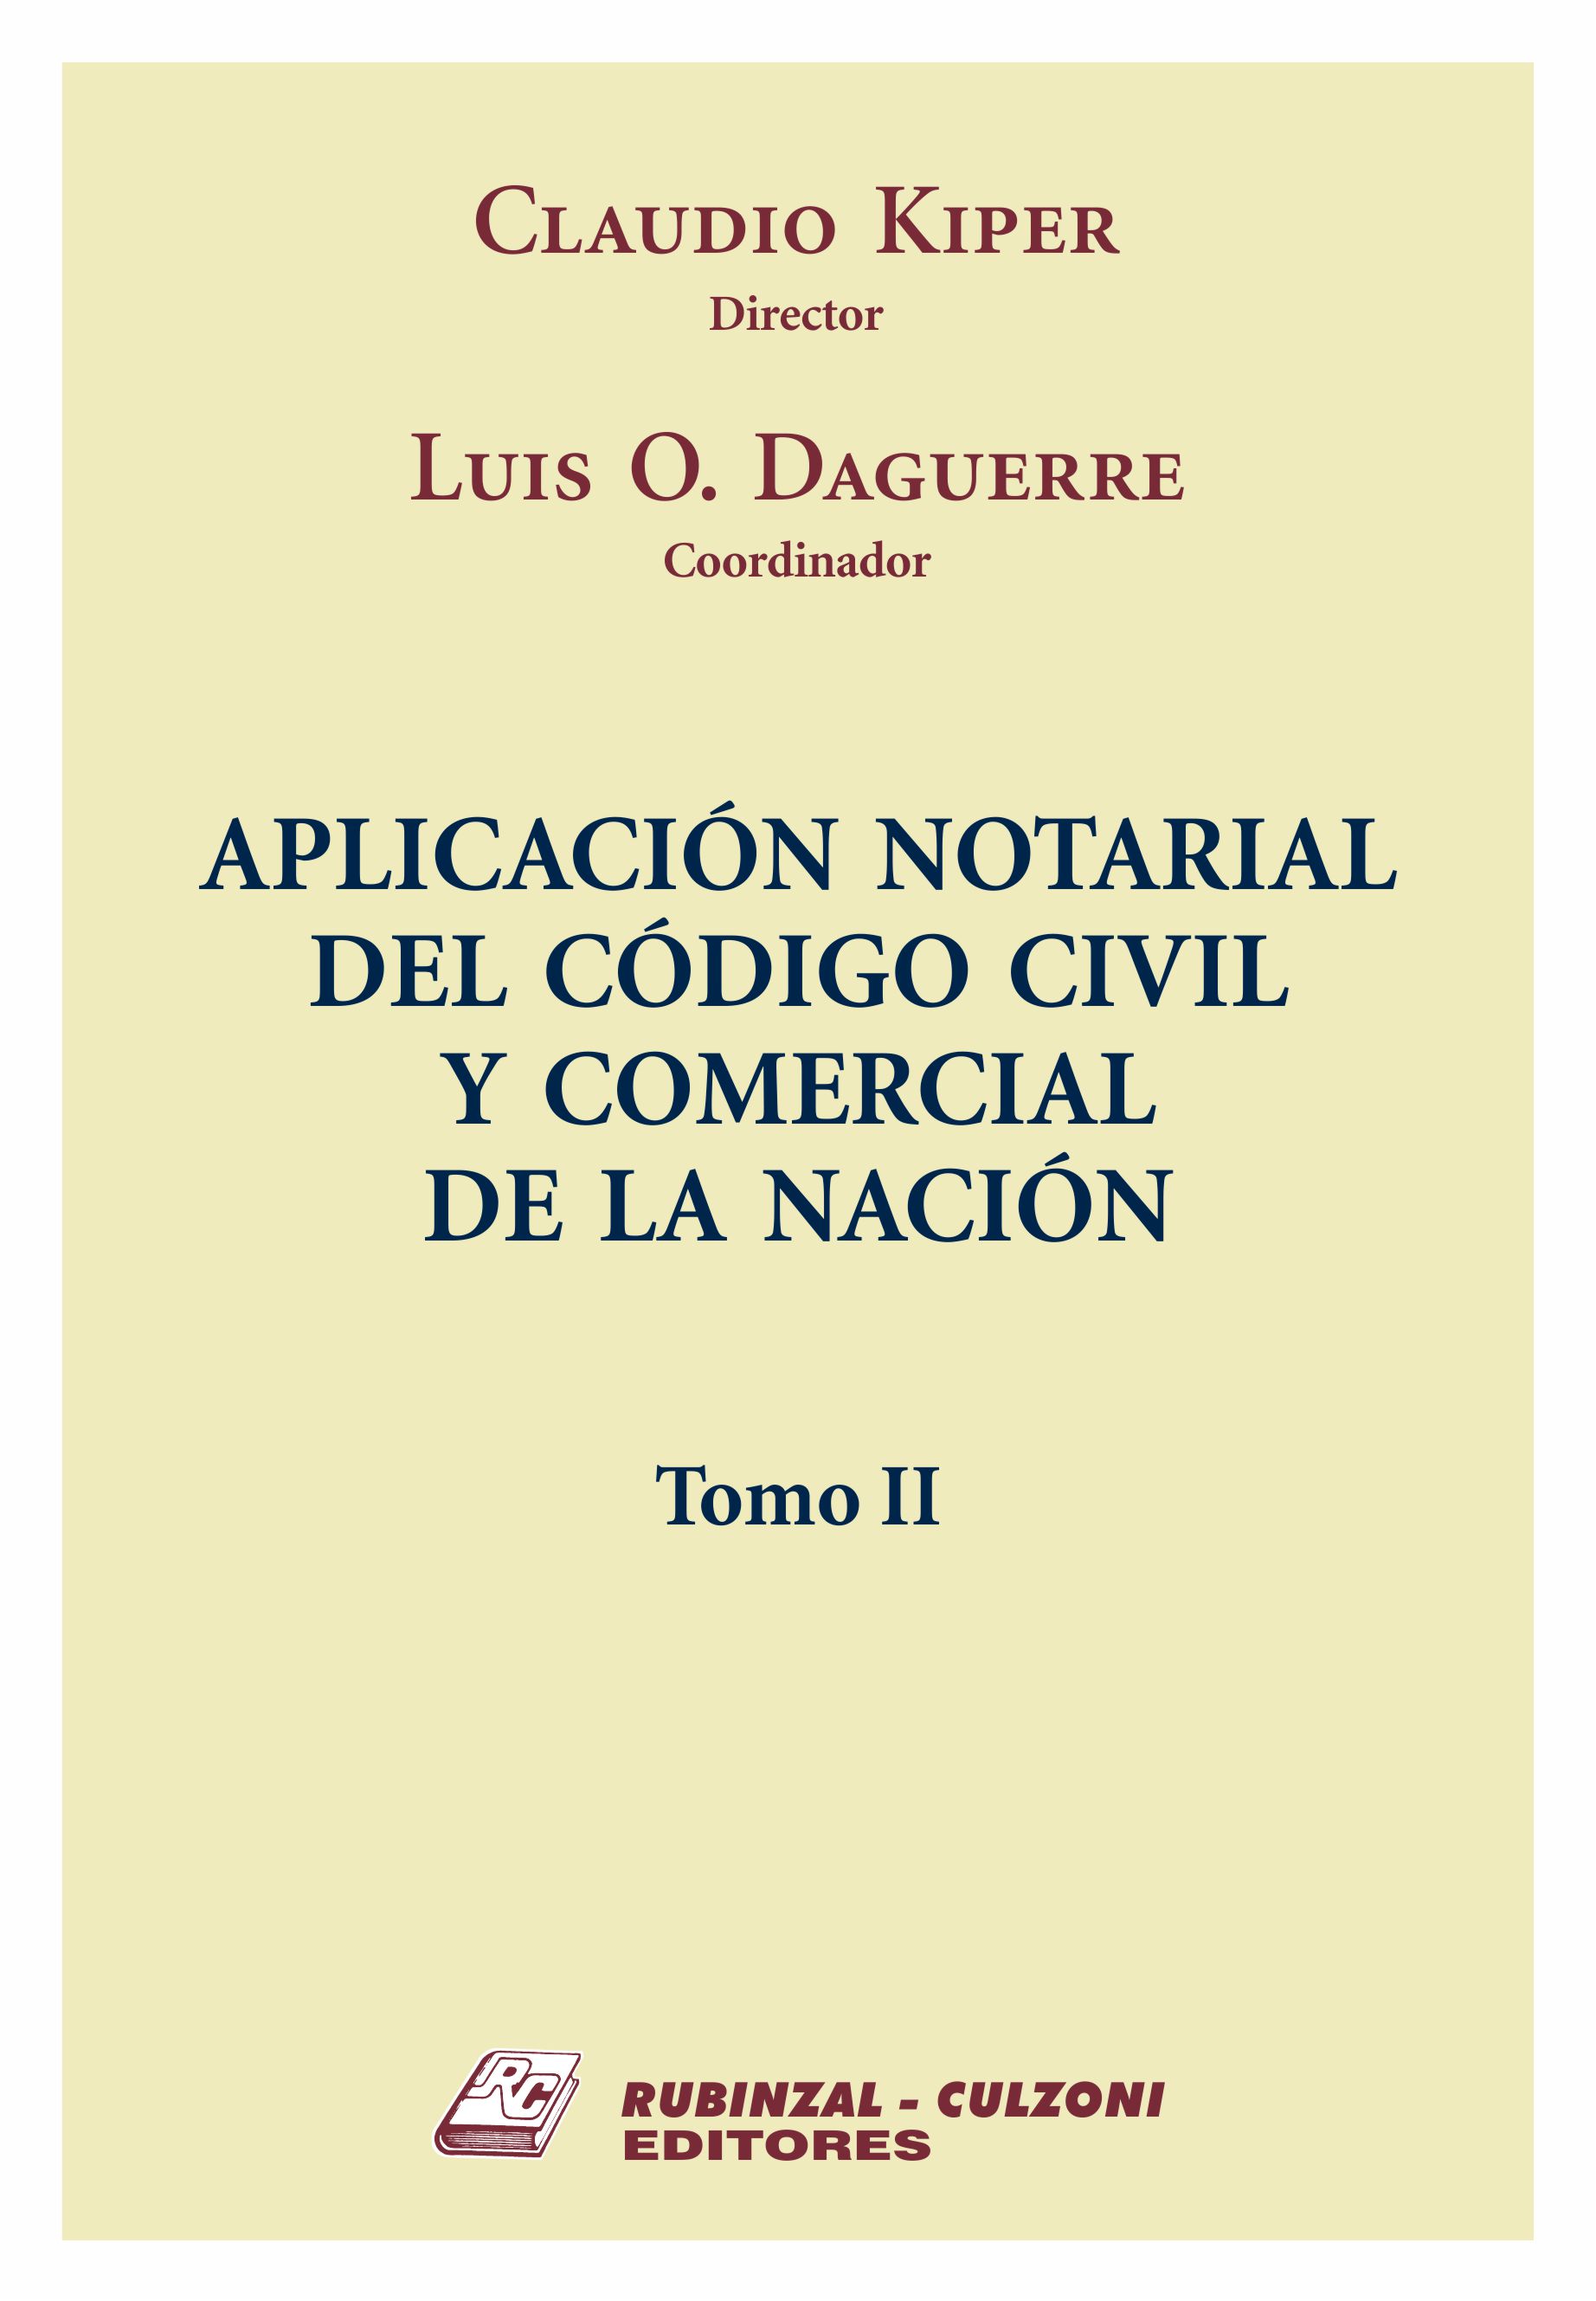 Aplicación notarial del Código Civil y Comercial de la Nación. - Tomo II.